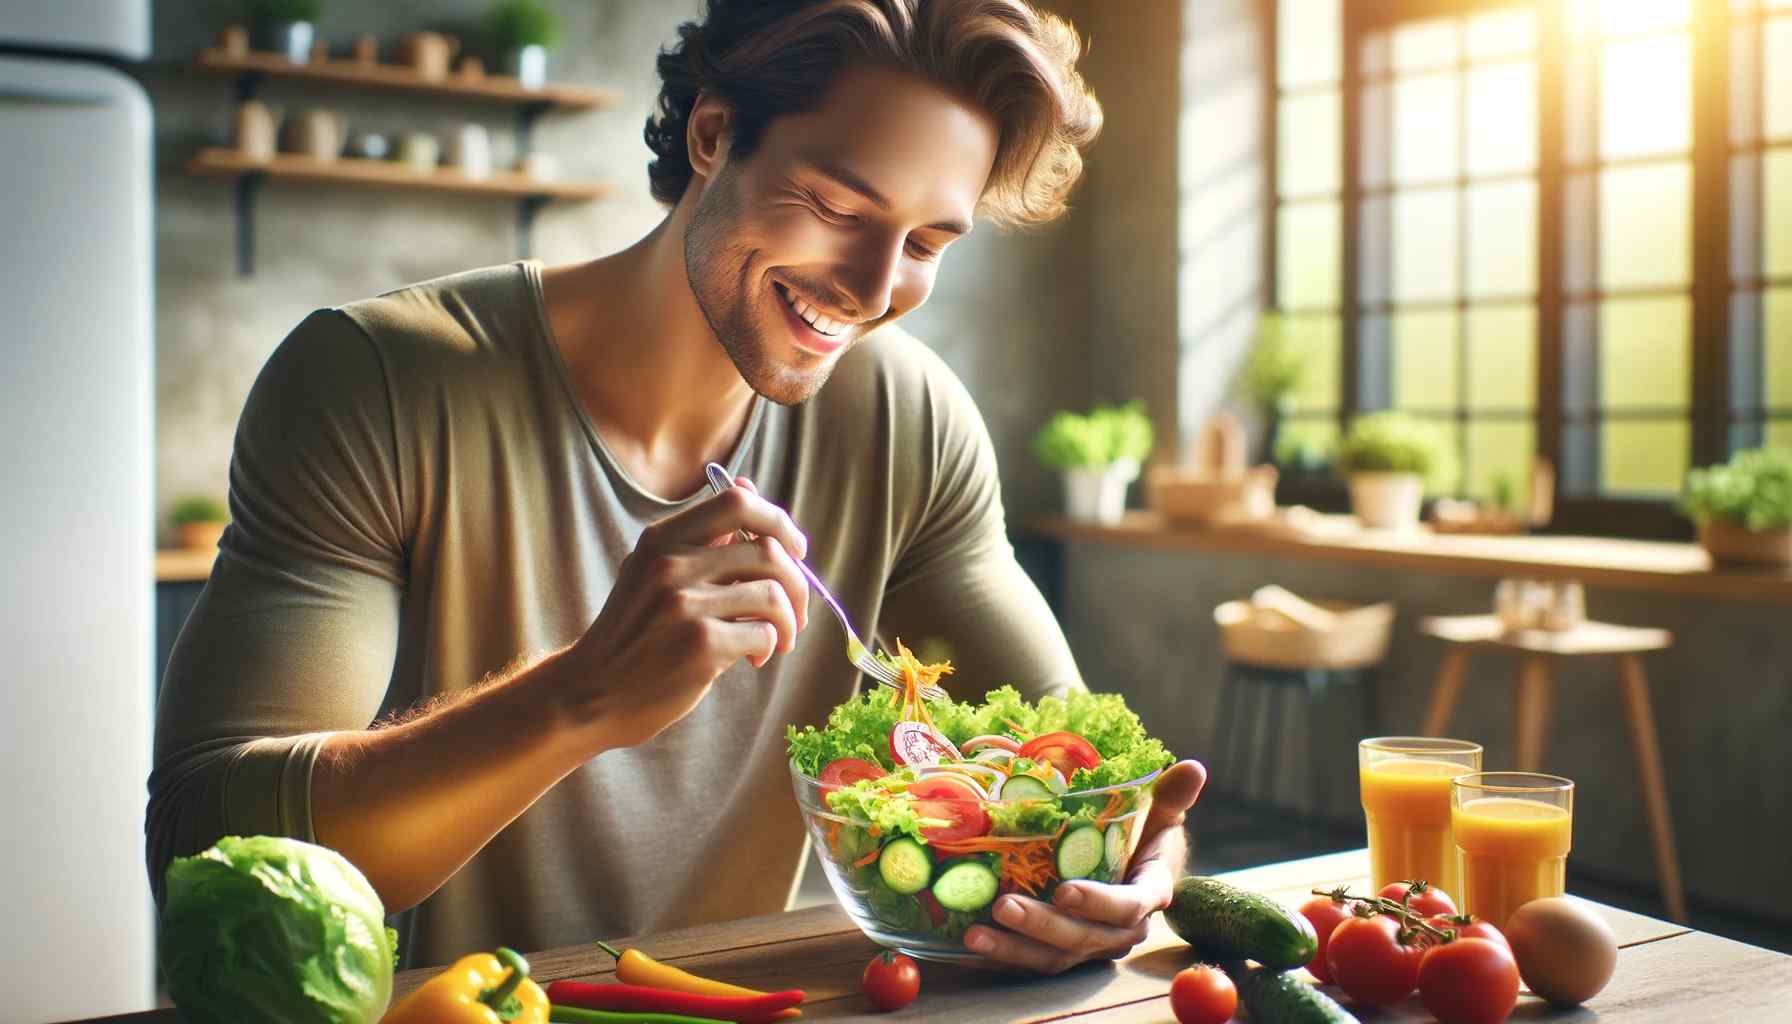 Realisztikus stílusú kép, amely egy egészséges salátát fogyasztó személyt ábrázol. A hangsúlyt az egyénre kell helyezni, aki élénk, színes salátát fogyaszt.